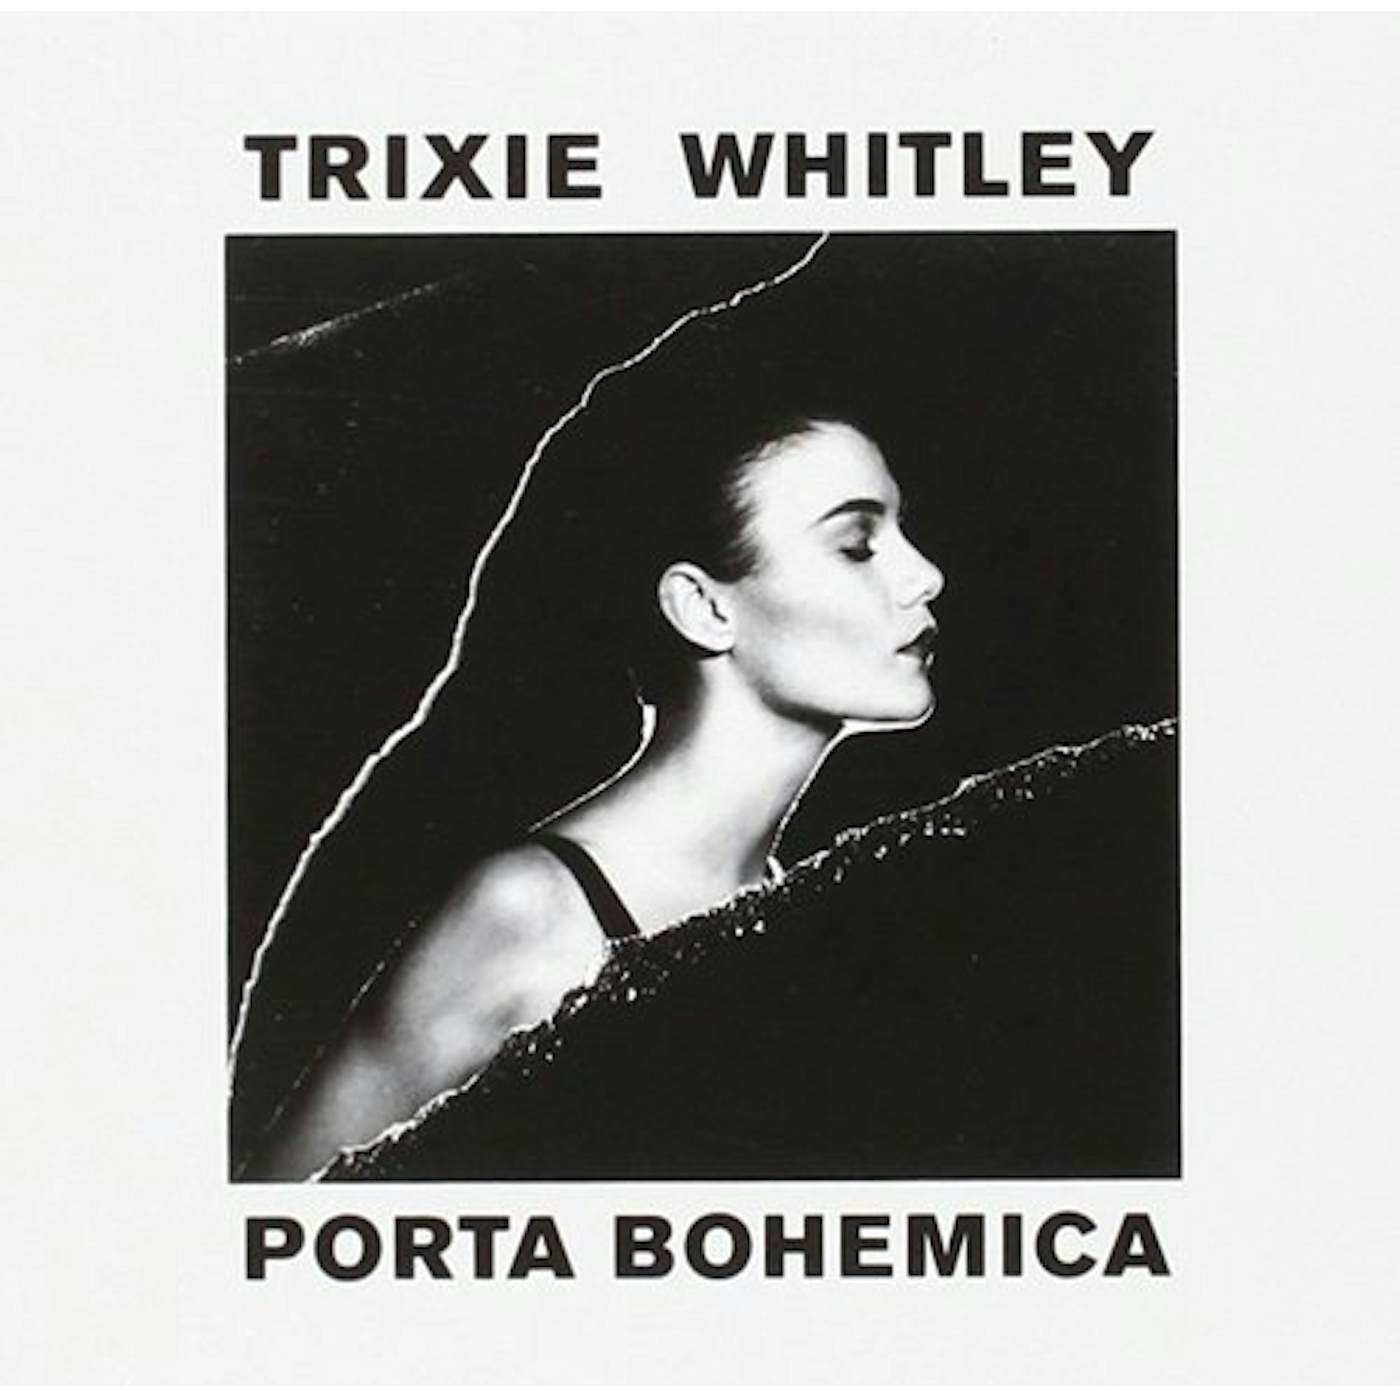 Trixie Whitley PORTA BOHEMICA CD